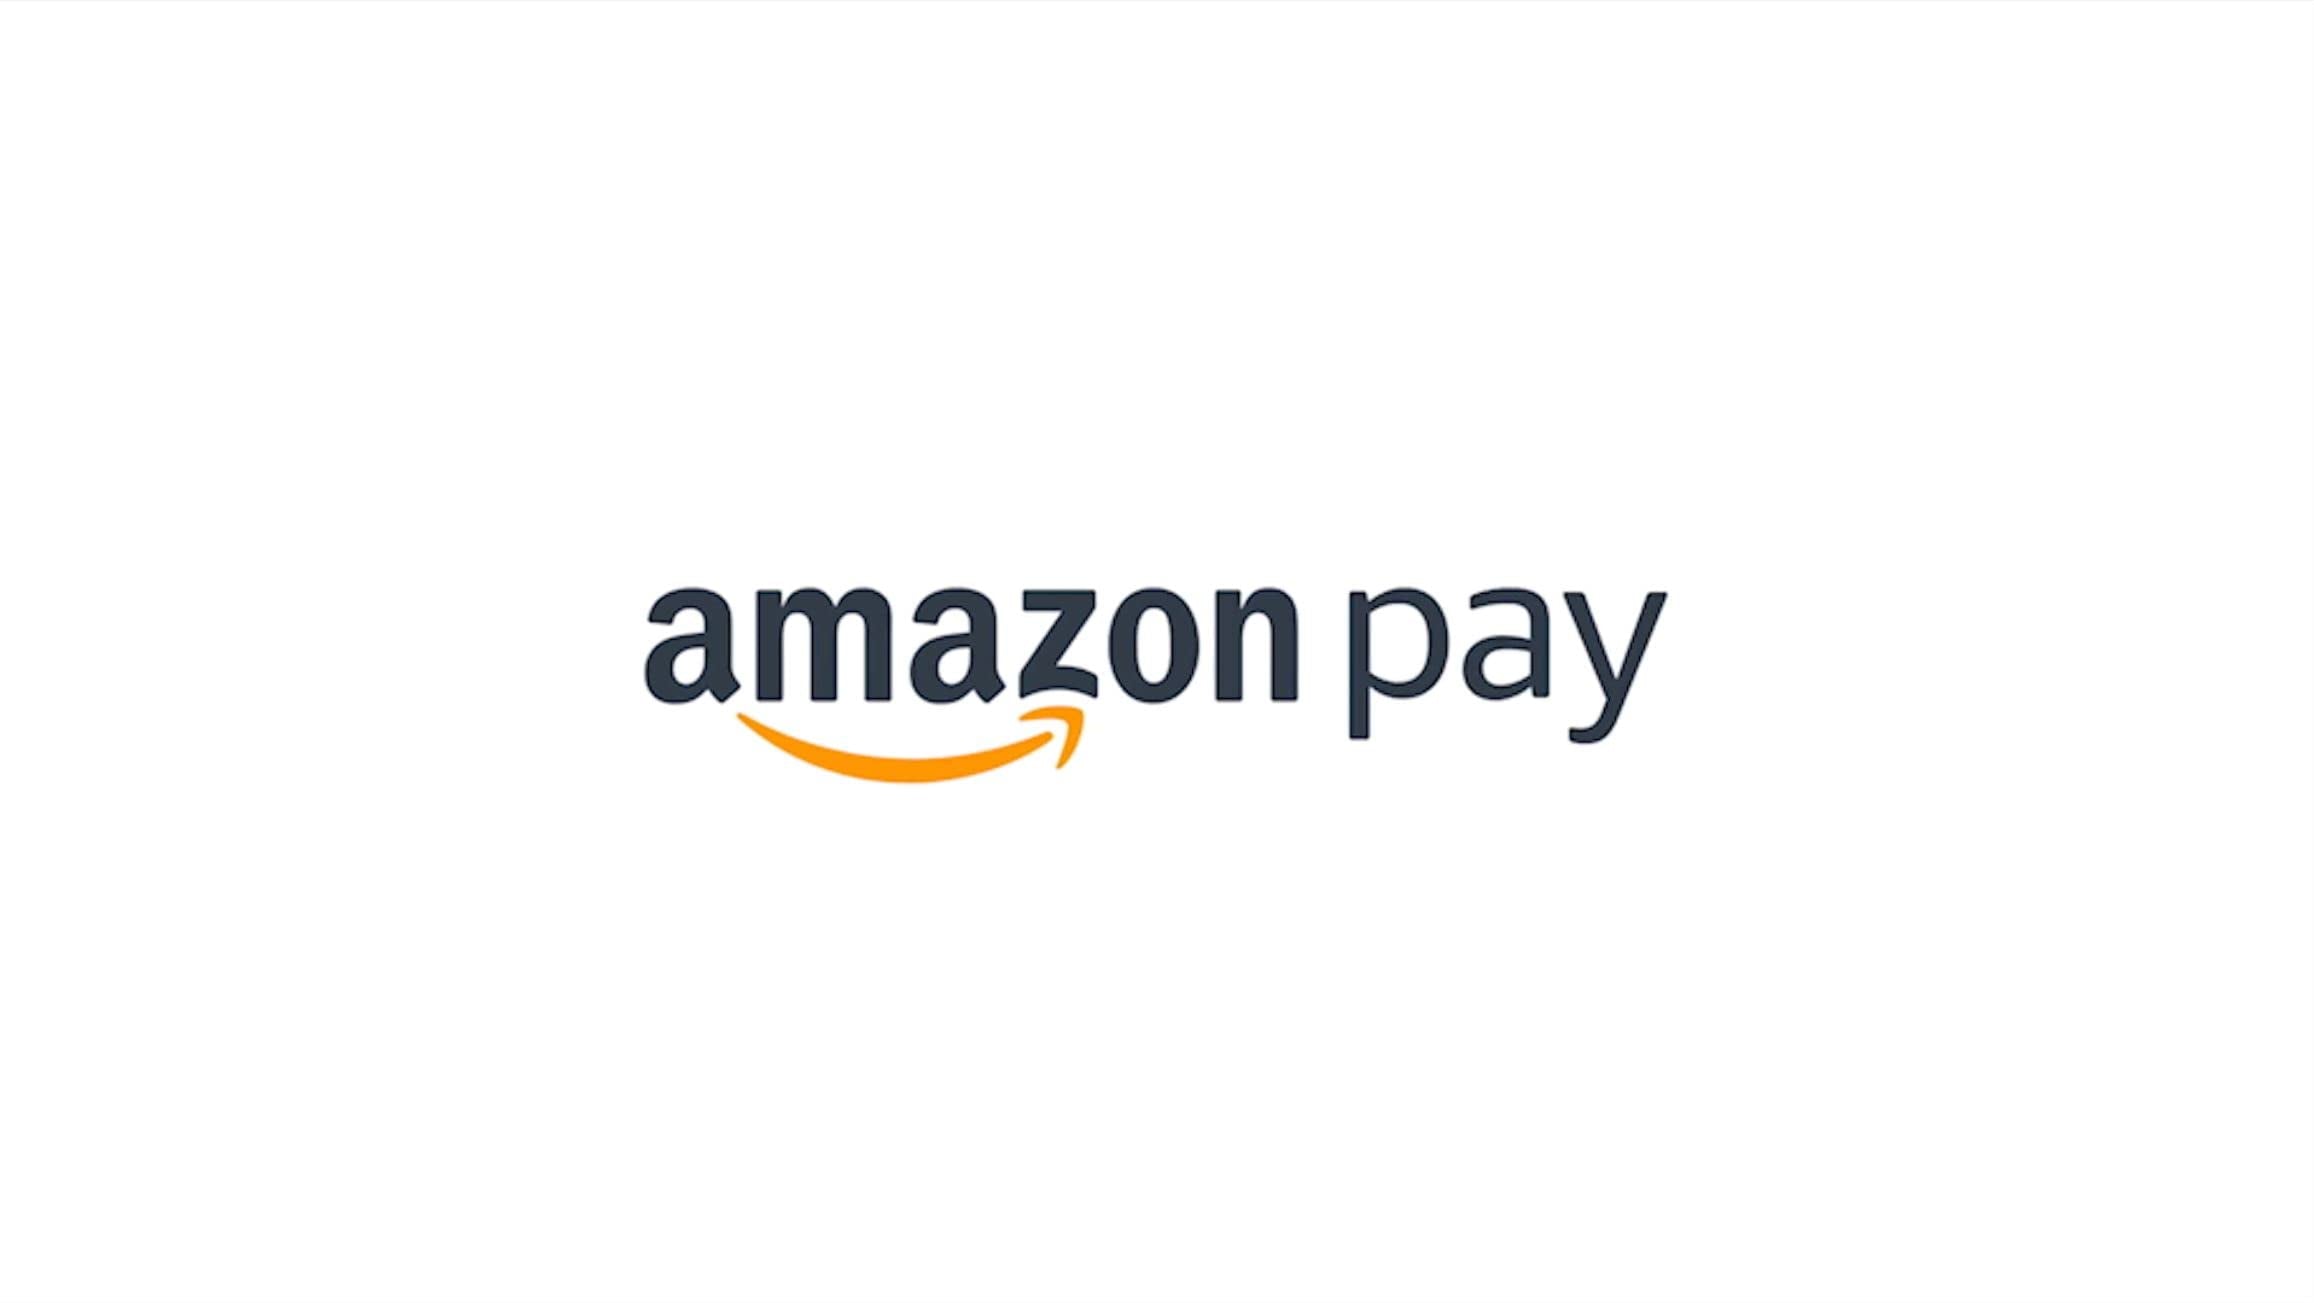 Amazon Pay決済が可能になりました